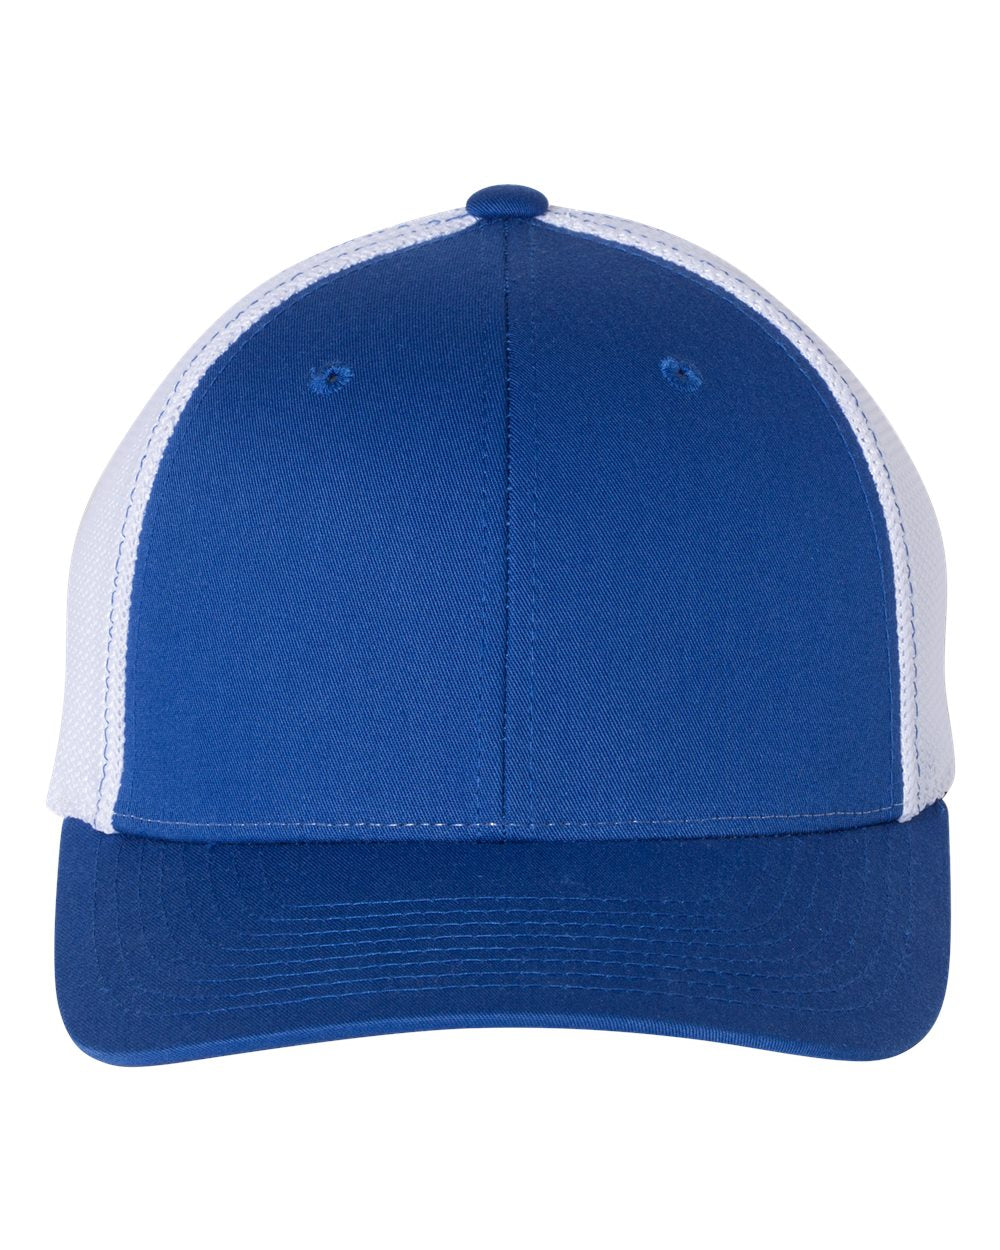 Richrdson 110 - Fitted Trucker Hat